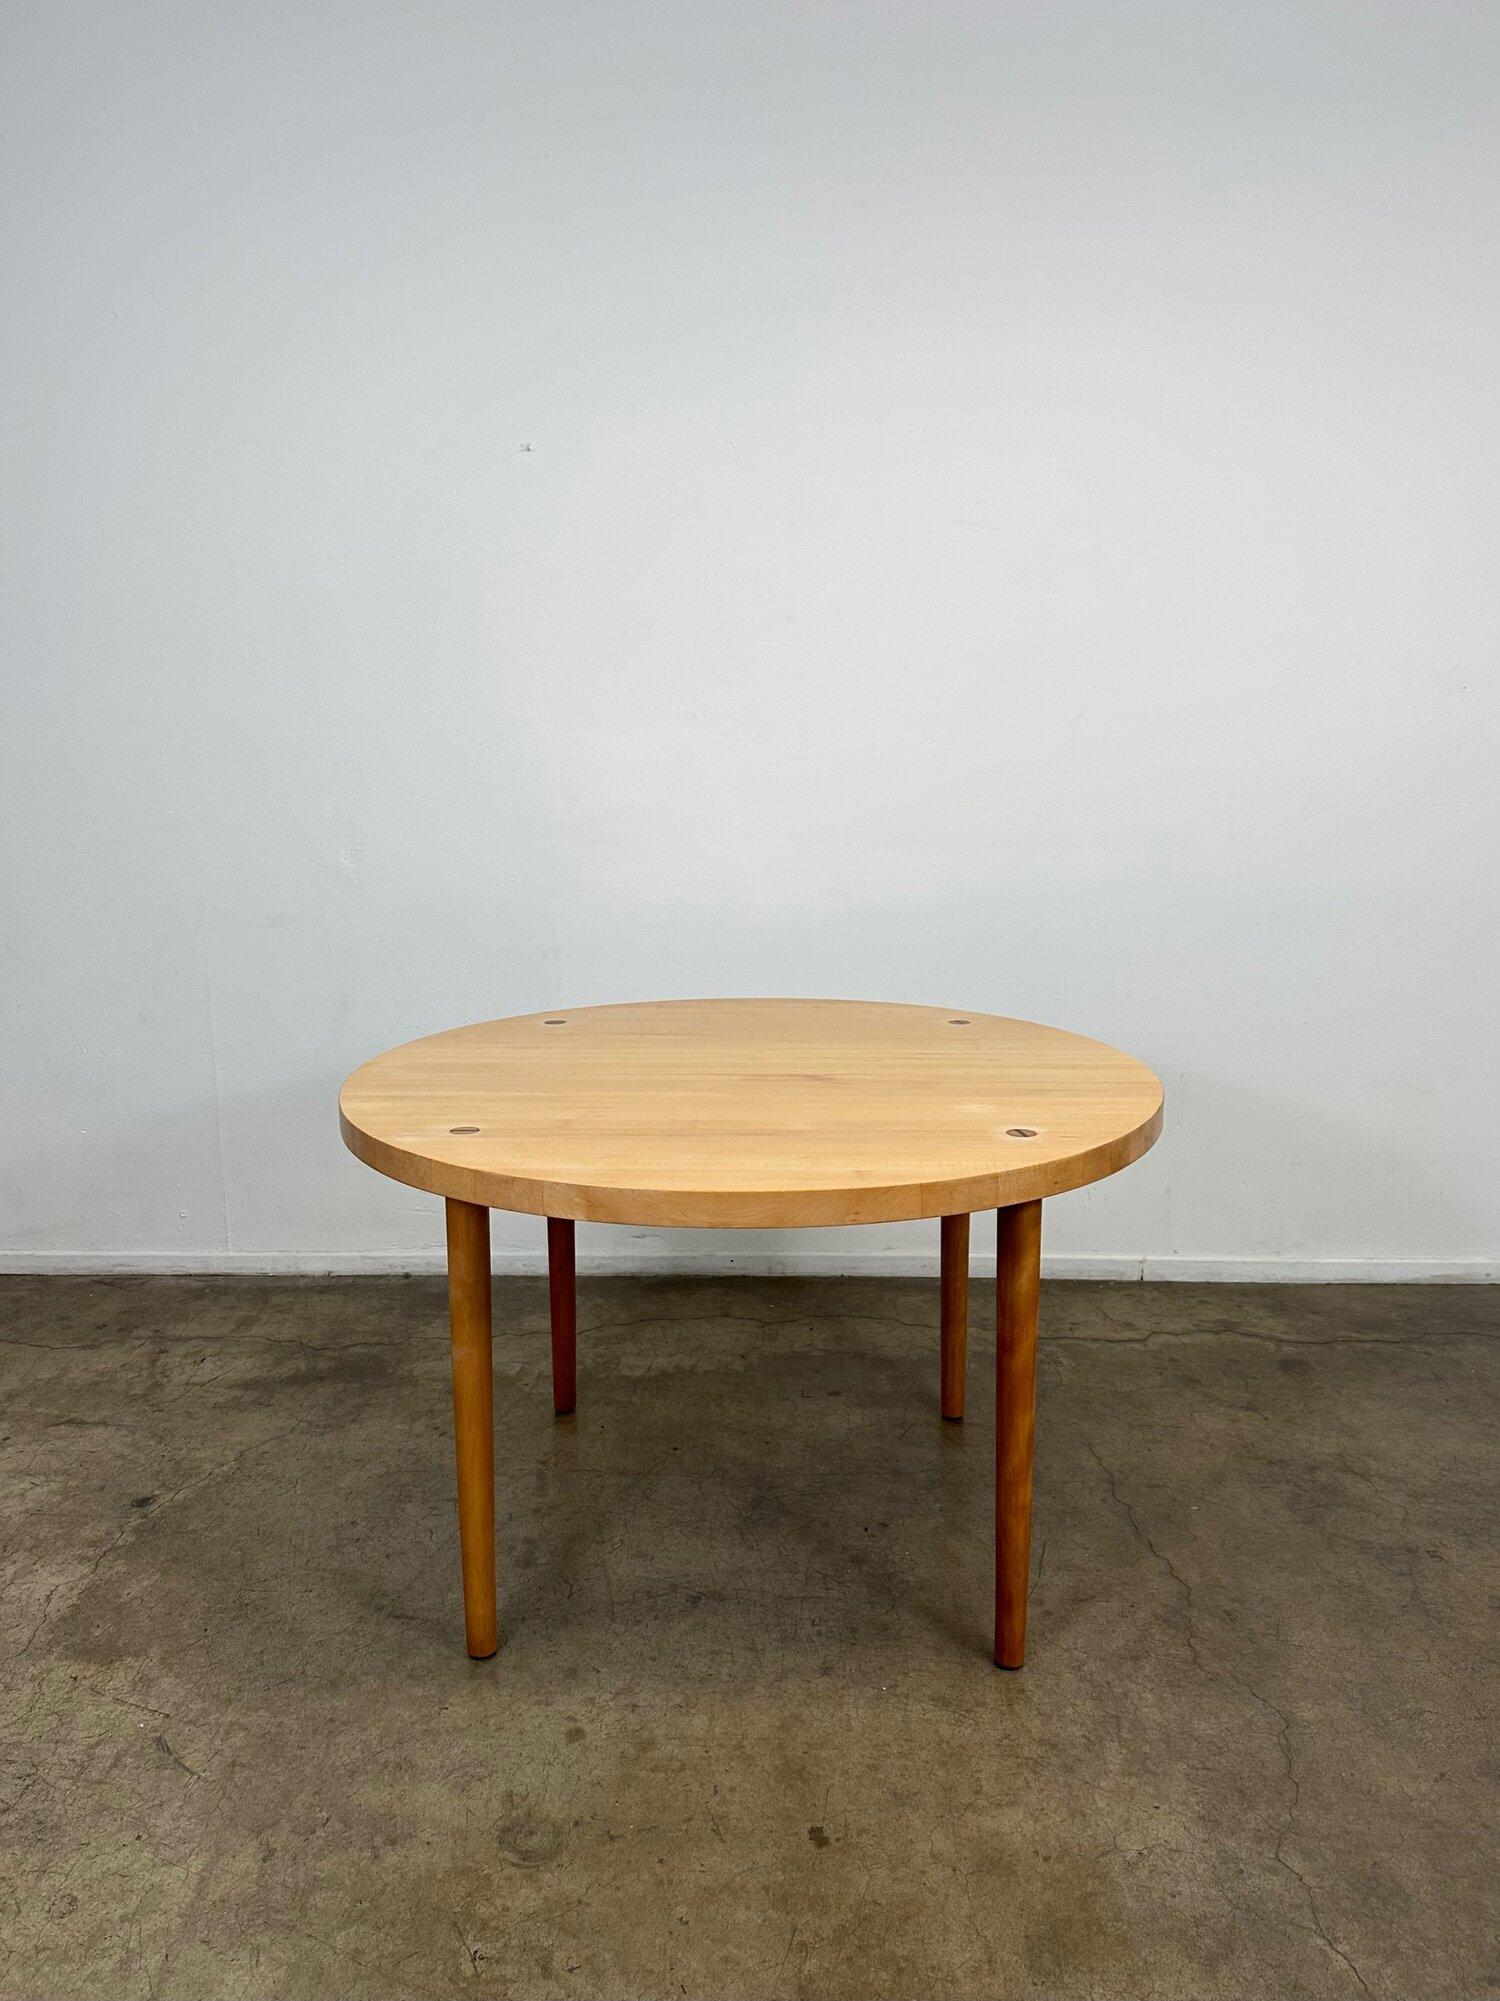 L48 H29.5. DÉGAGEMENT AUX GENOUX 27.

Table de salle à manger en érable massif datant des années 1960, conçue par Claude Bunyard pour Design/One. L'article offre des matériaux de haute qualité avec un design minimaliste. Des inserts très subtils de